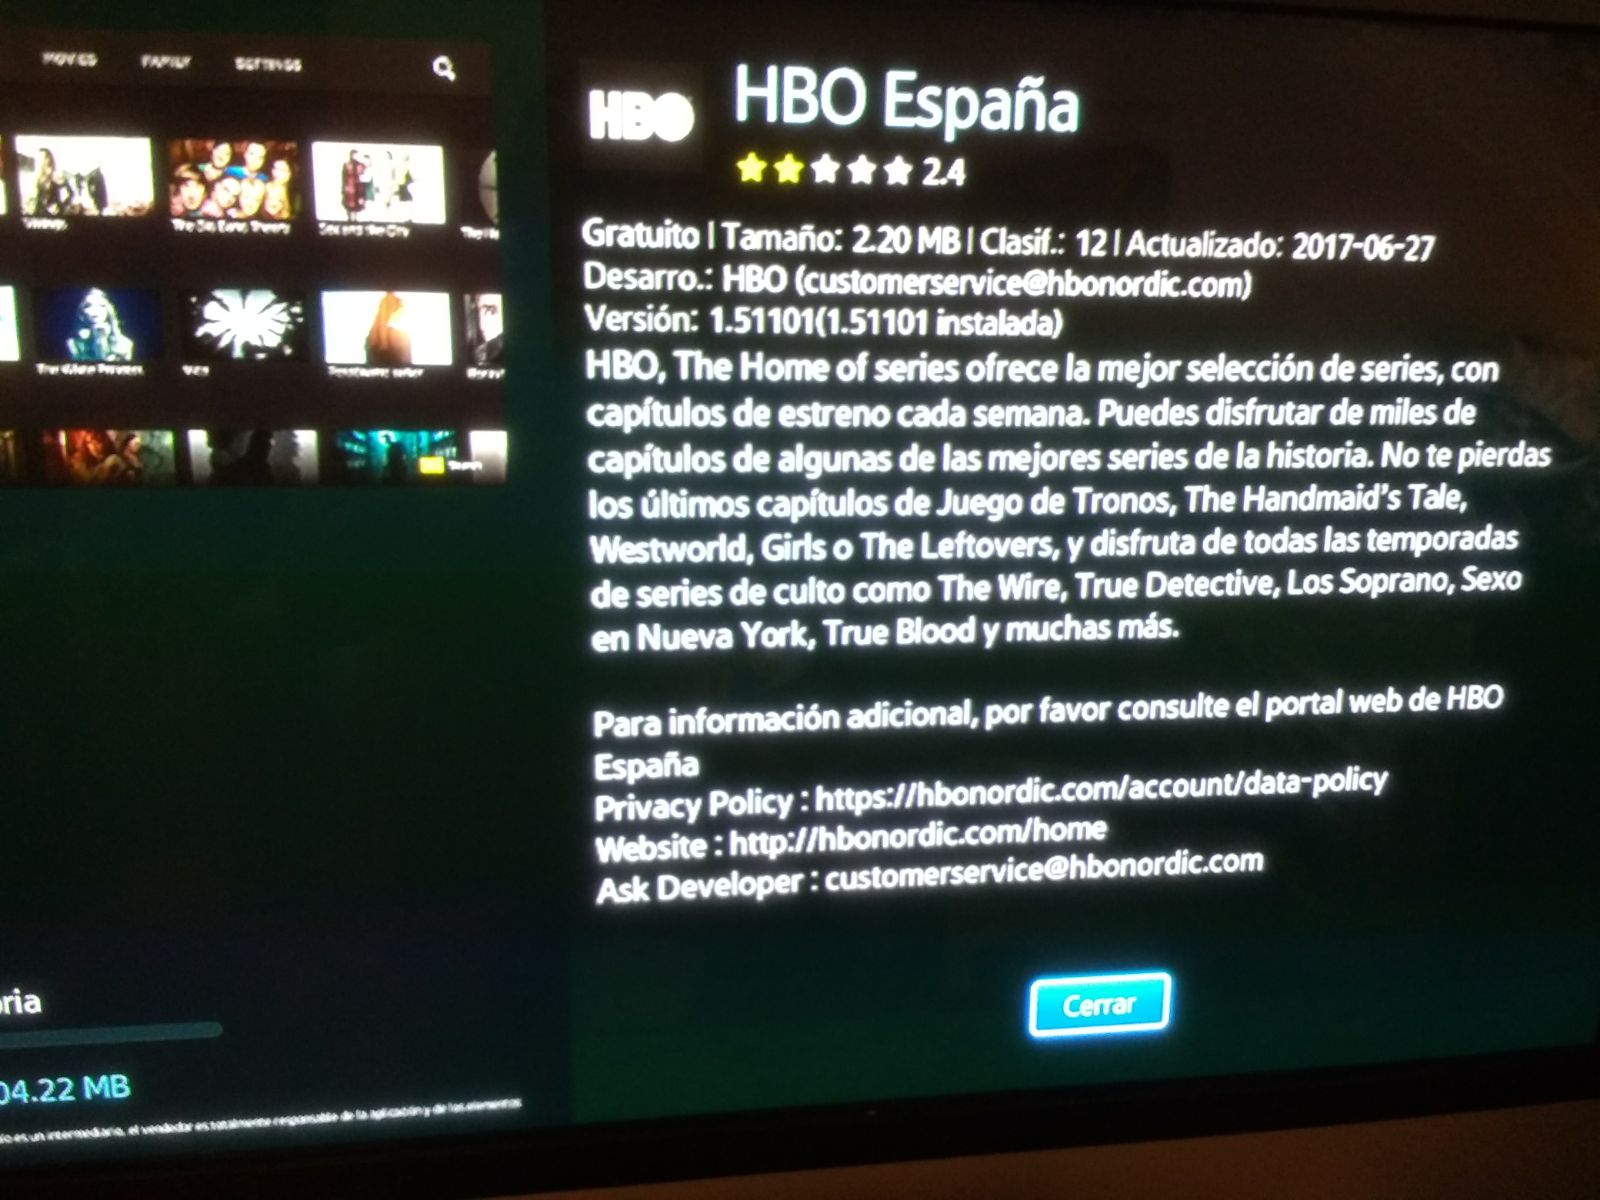 Solucionado: App HBO desaparecida en smart TV - Página 3 - Samsung Community